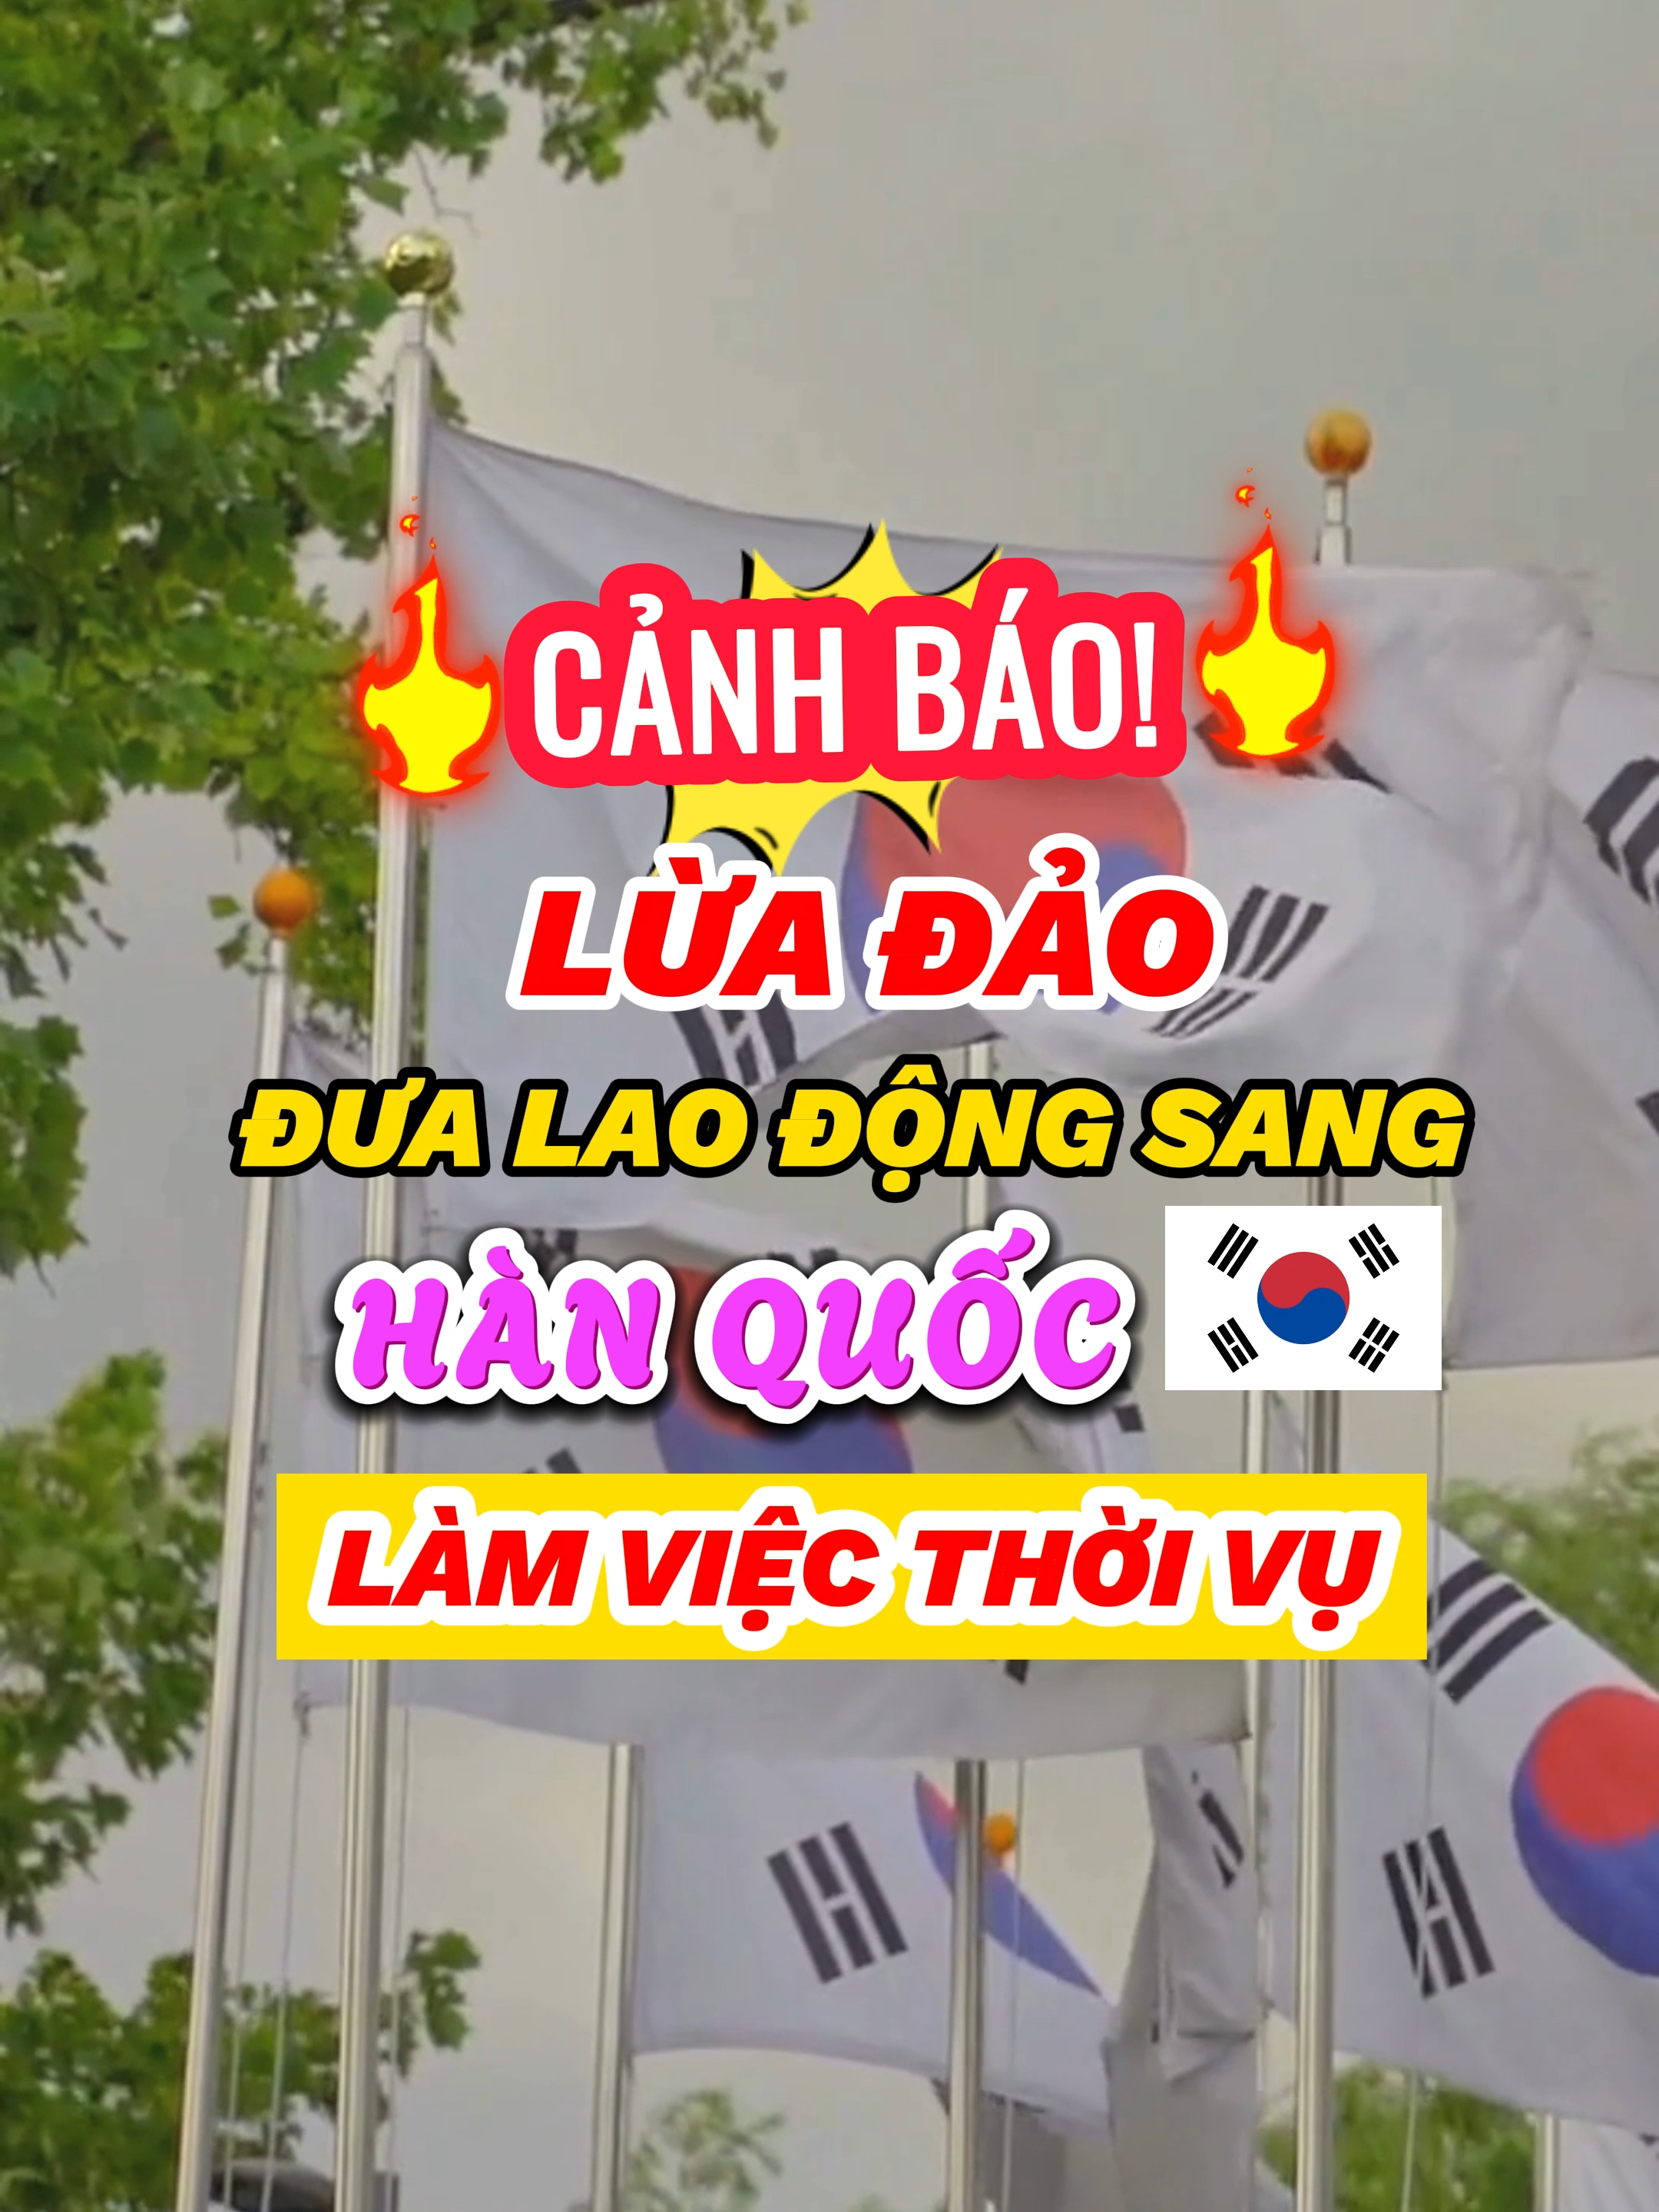 CẢNH GIÁC chiêu trò lừa đảo người dân đi lao động thời vụ Hàn Quốc. #hanquoc #korea #visa #xkld #laodongthoivu #xkldhanquoc #vieclamhanquoc #xuhuong